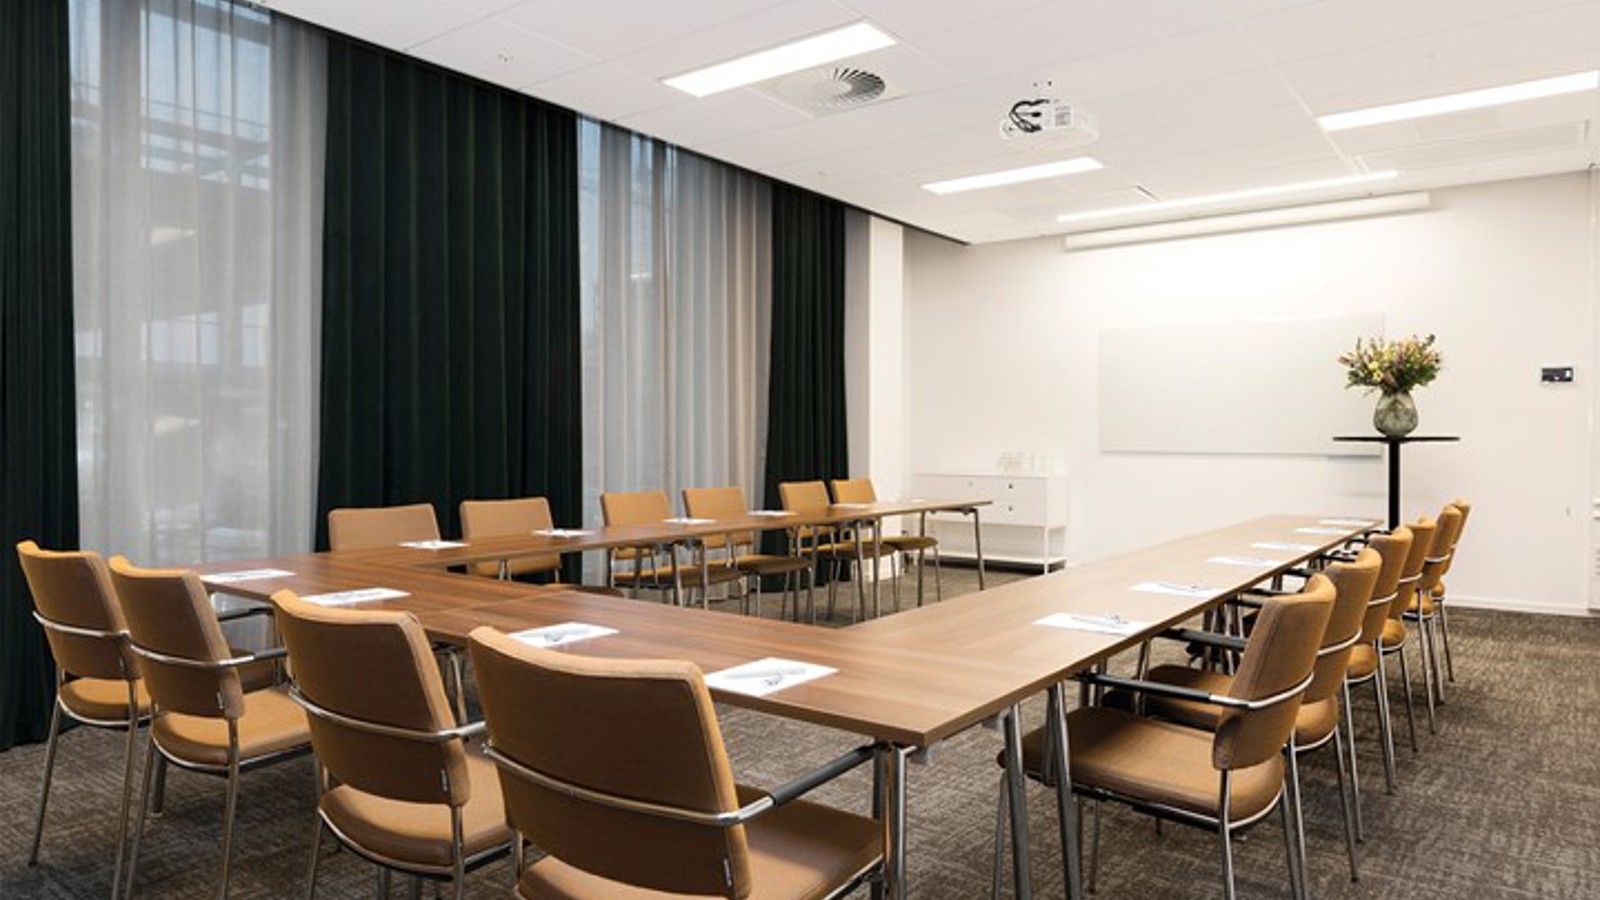 Konferensrum med u-sittning, bruna möbler, vita väggar, grå matta och stora fönster